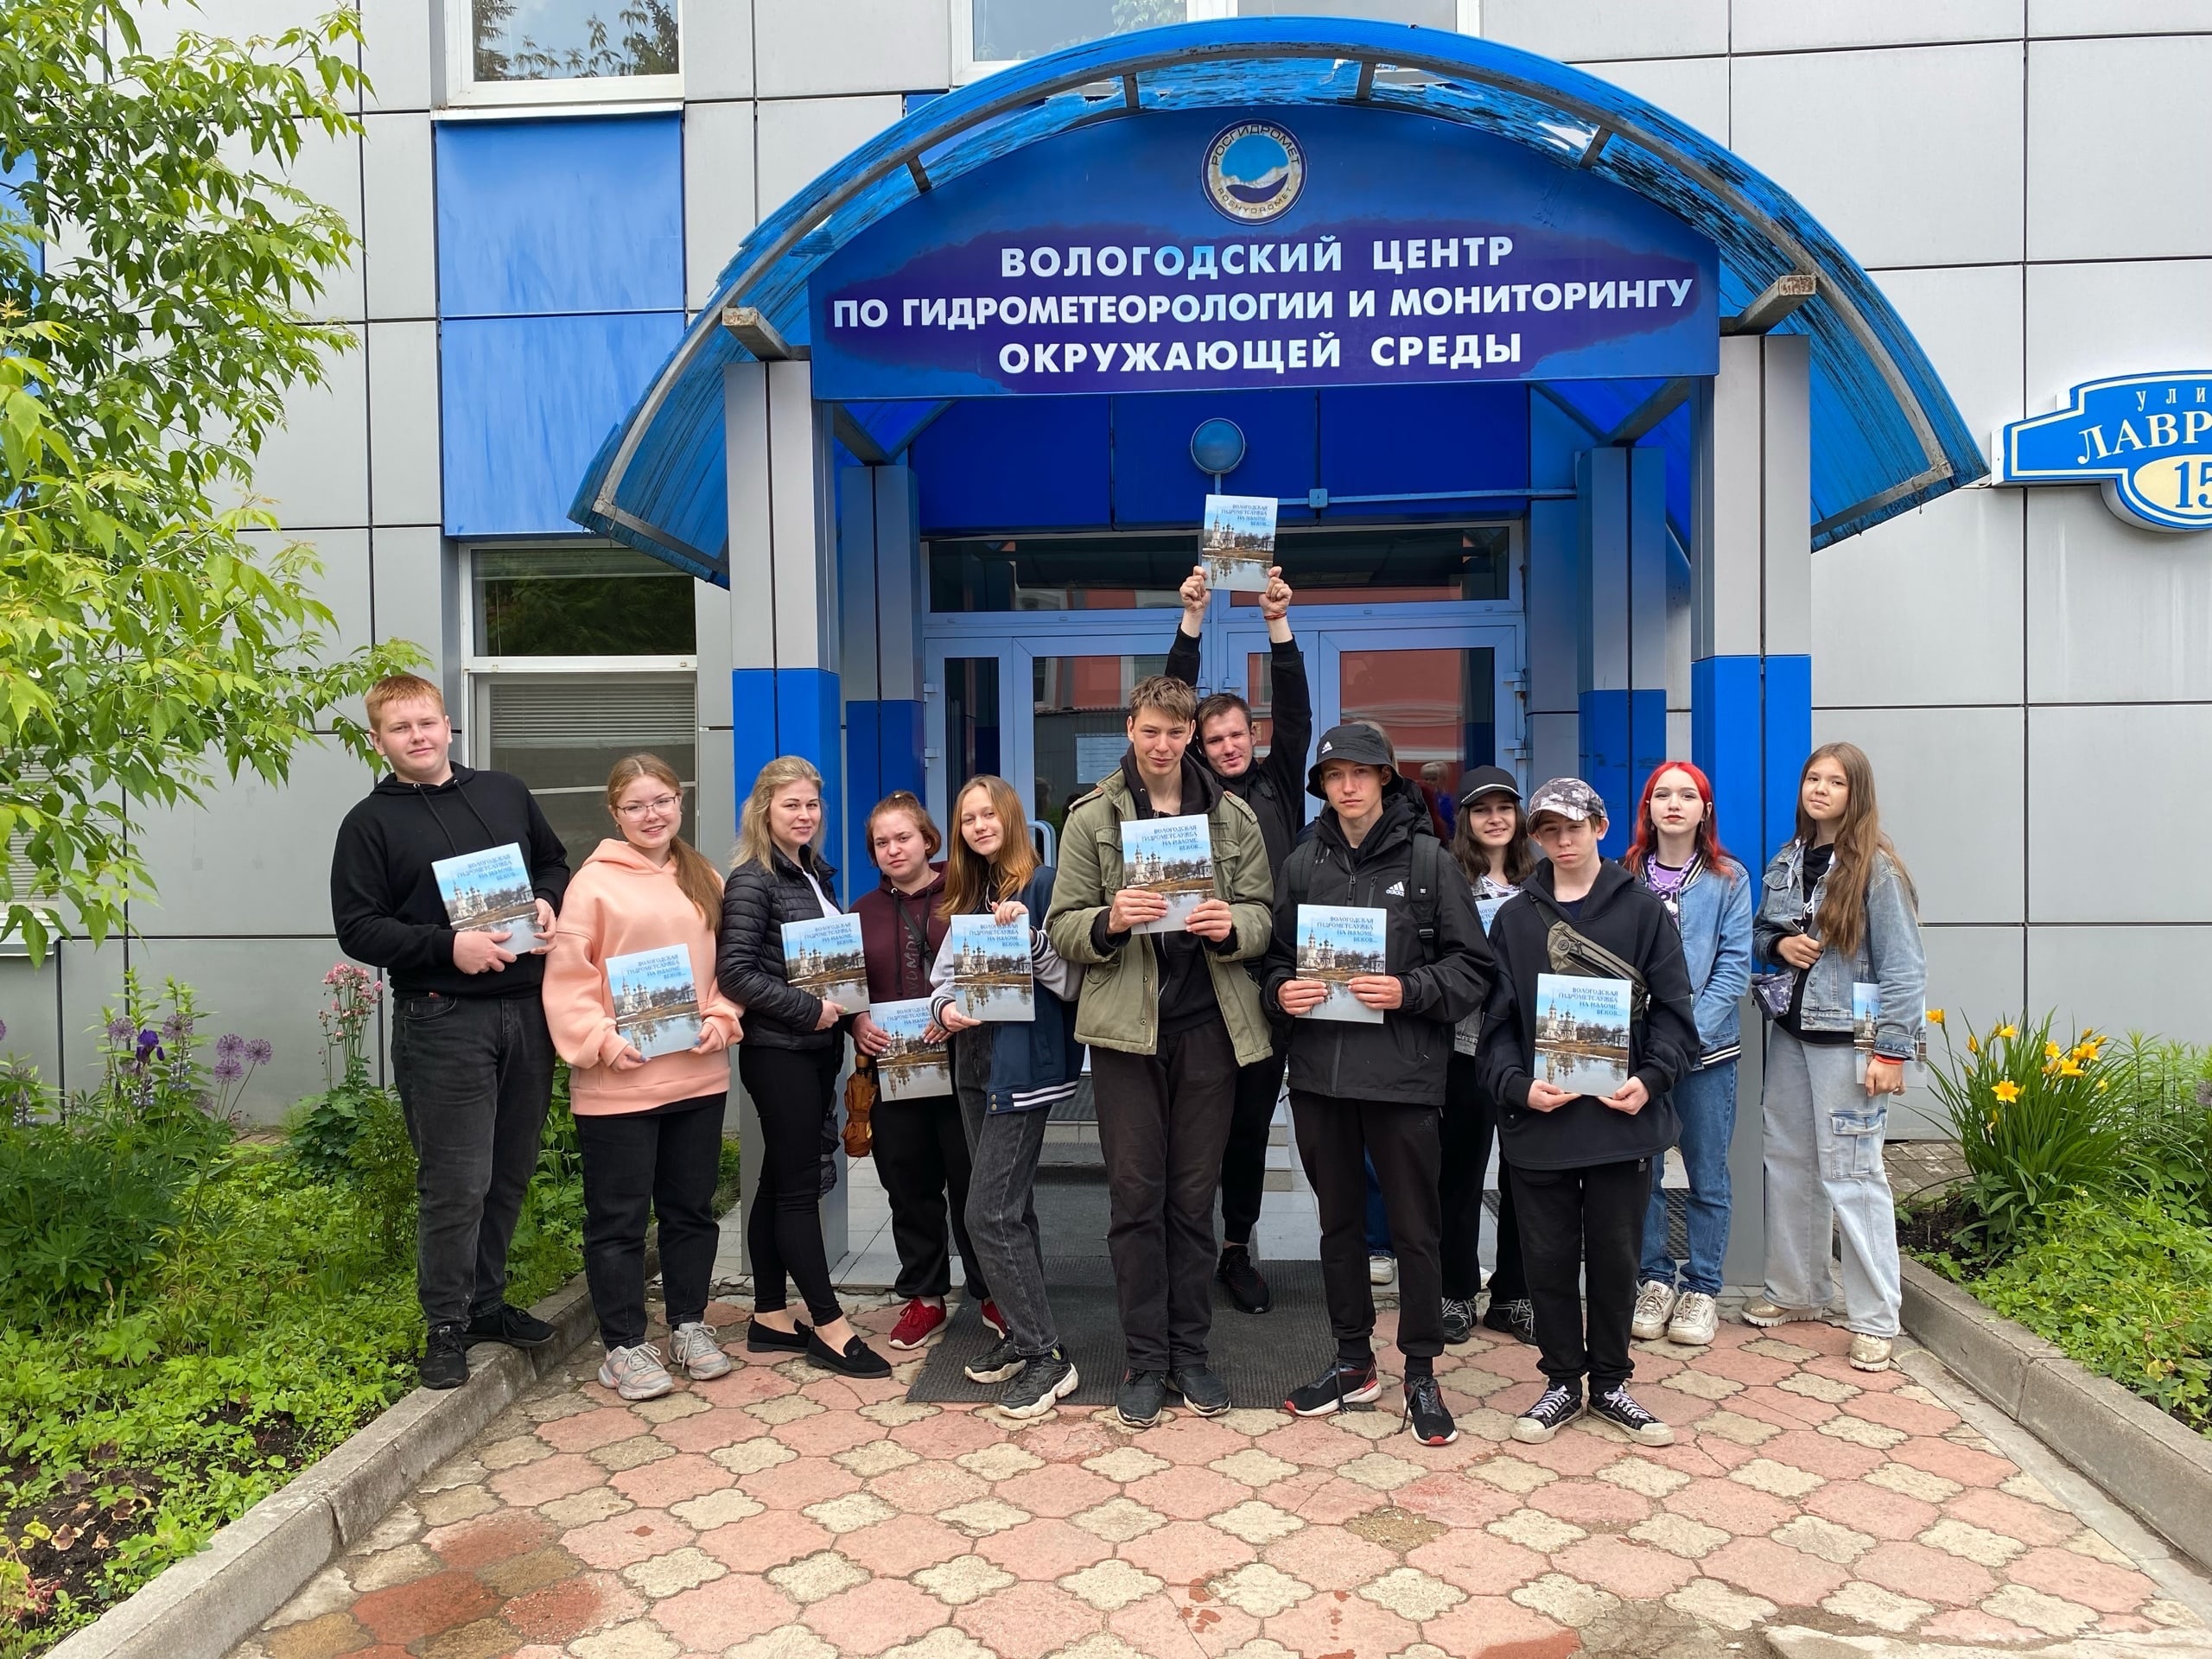 Подростки из трудовой бригады посетили Вологодский центр по гидрометеорологии и мониторингу окружающей среды